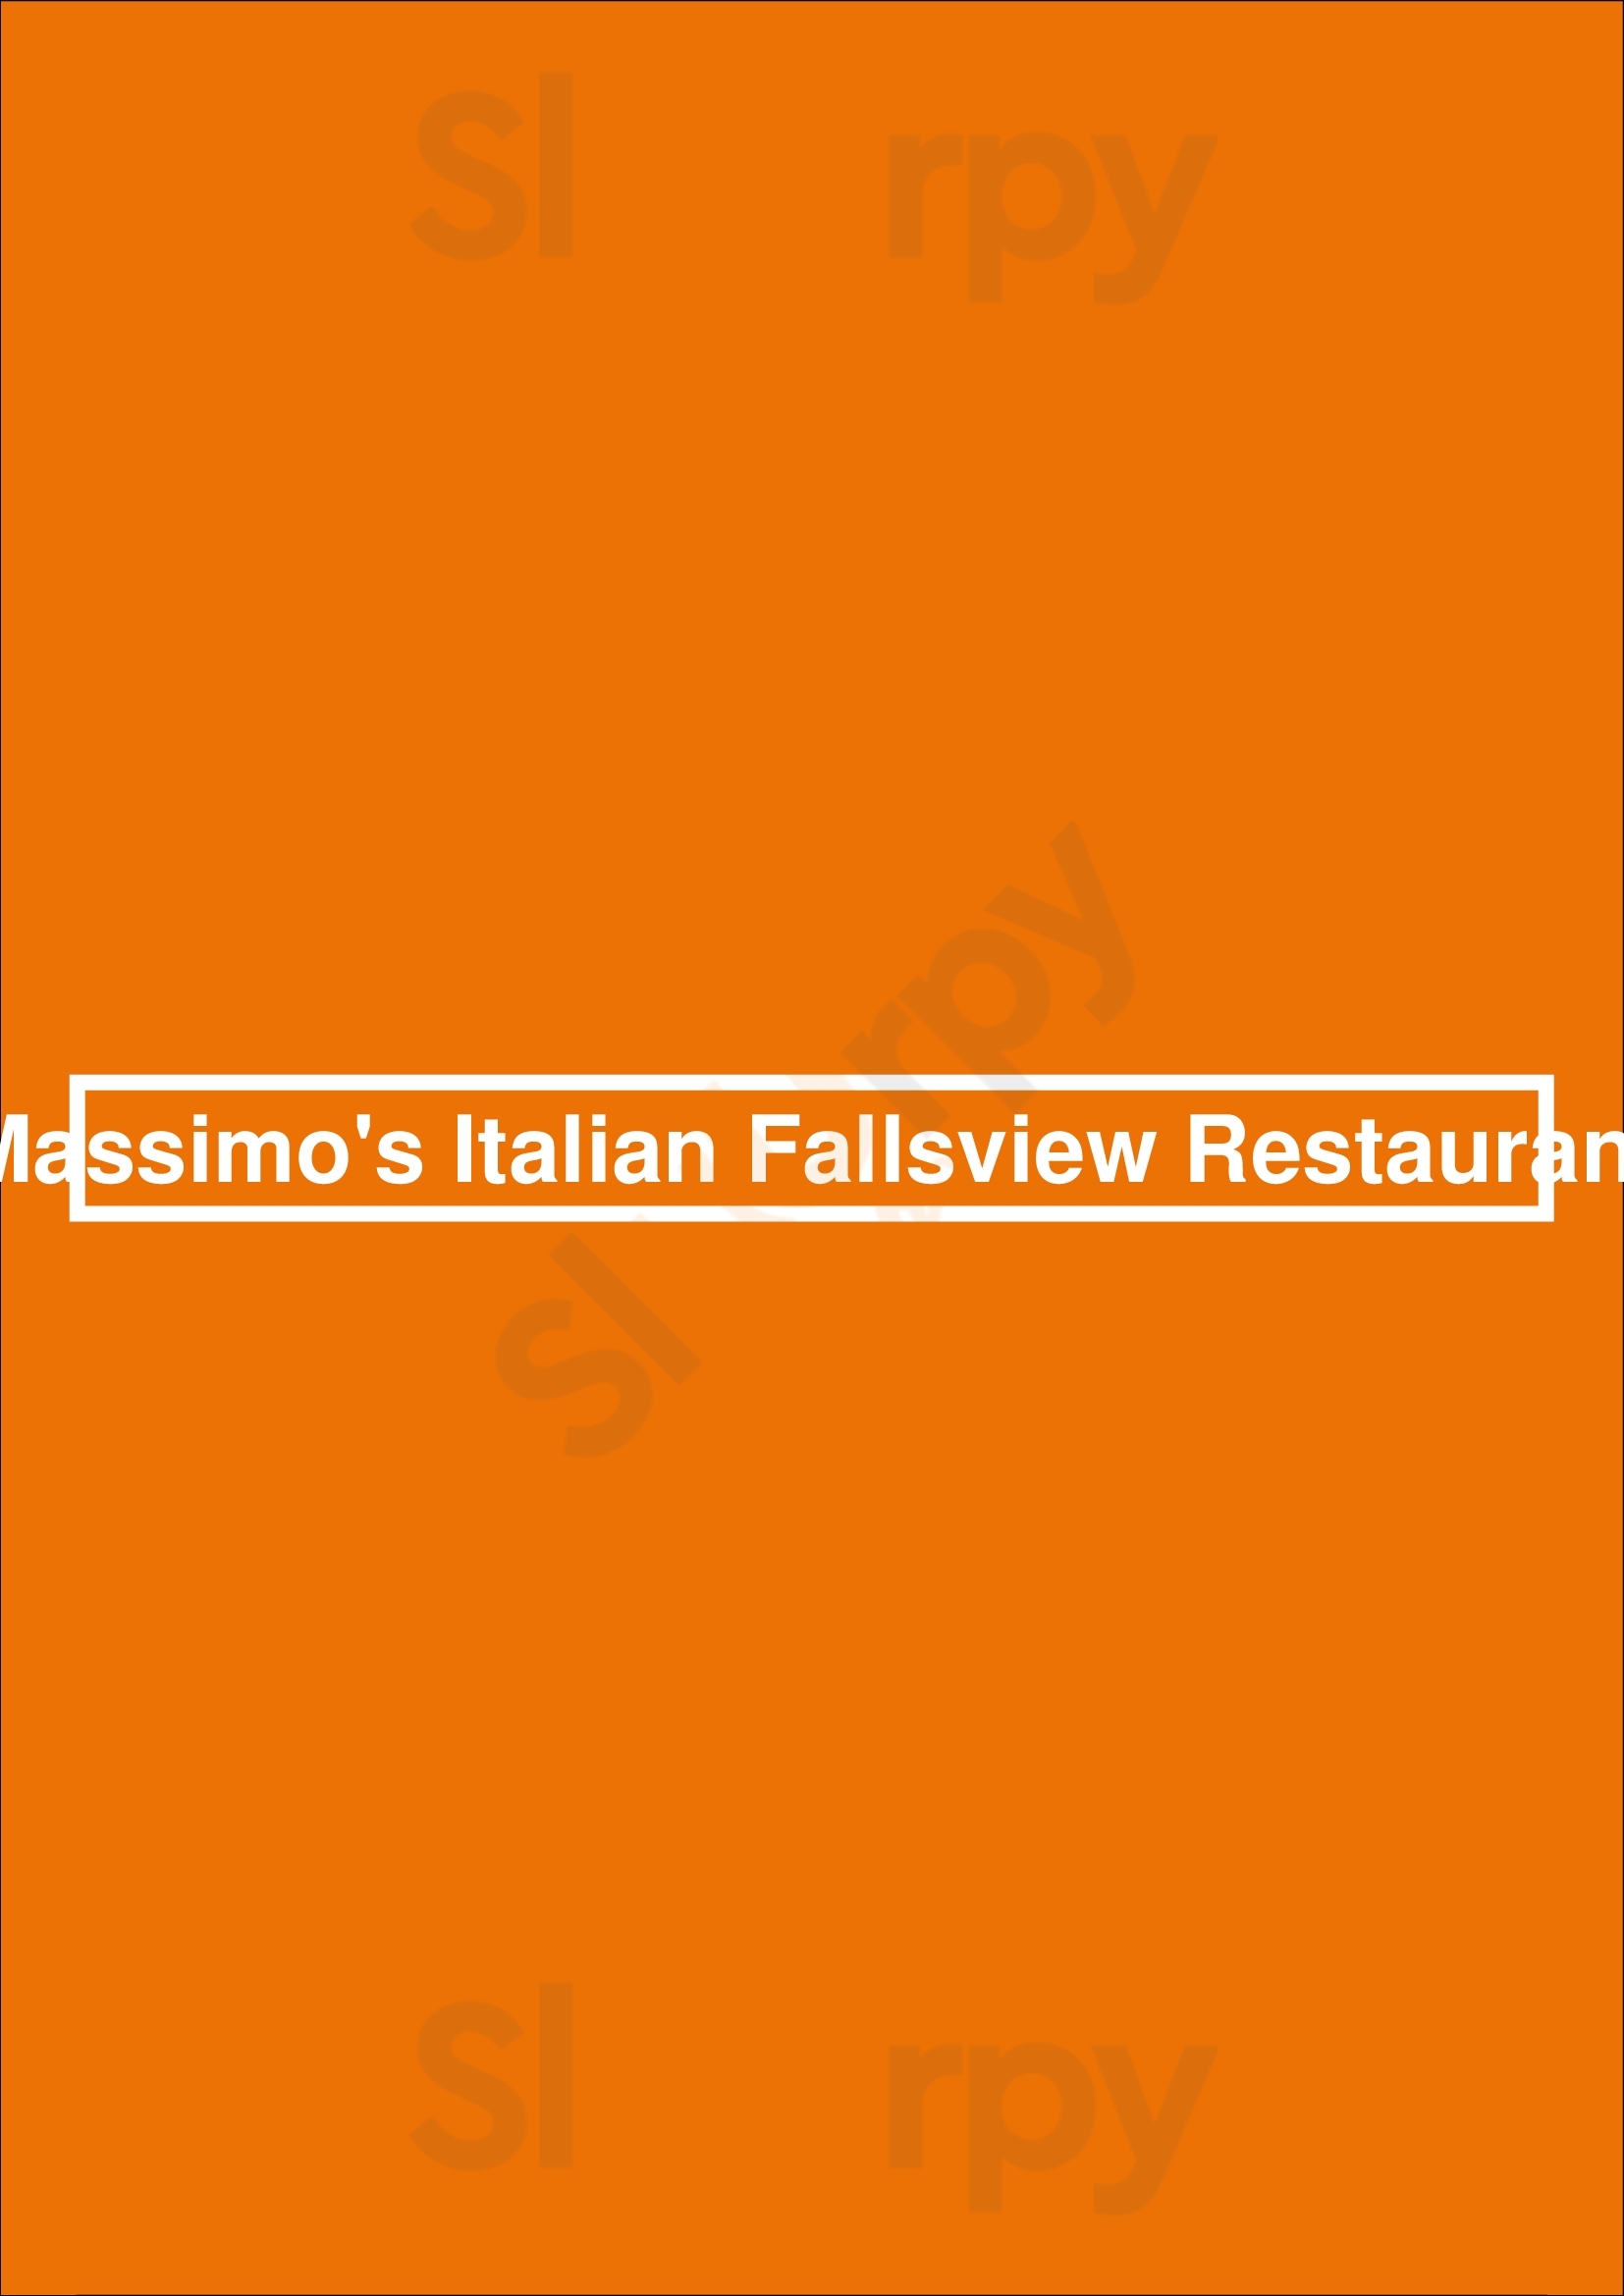 Massimo's Italian Fallsview Restaurant Niagara Falls Menu - 1